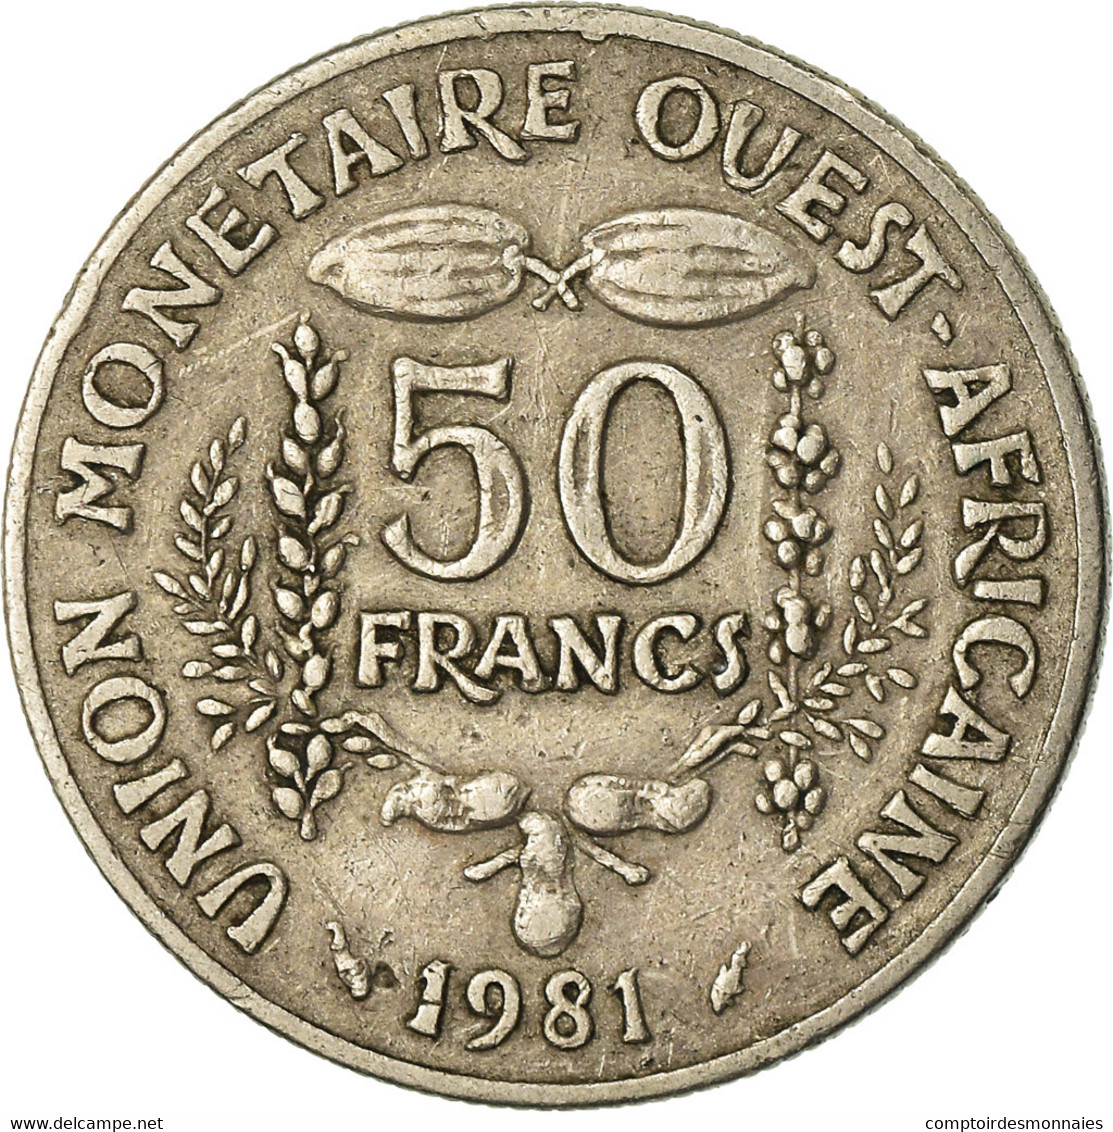 Monnaie, West African States, 50 Francs, 1981, TTB, Copper-nickel, KM:6 - Côte-d'Ivoire